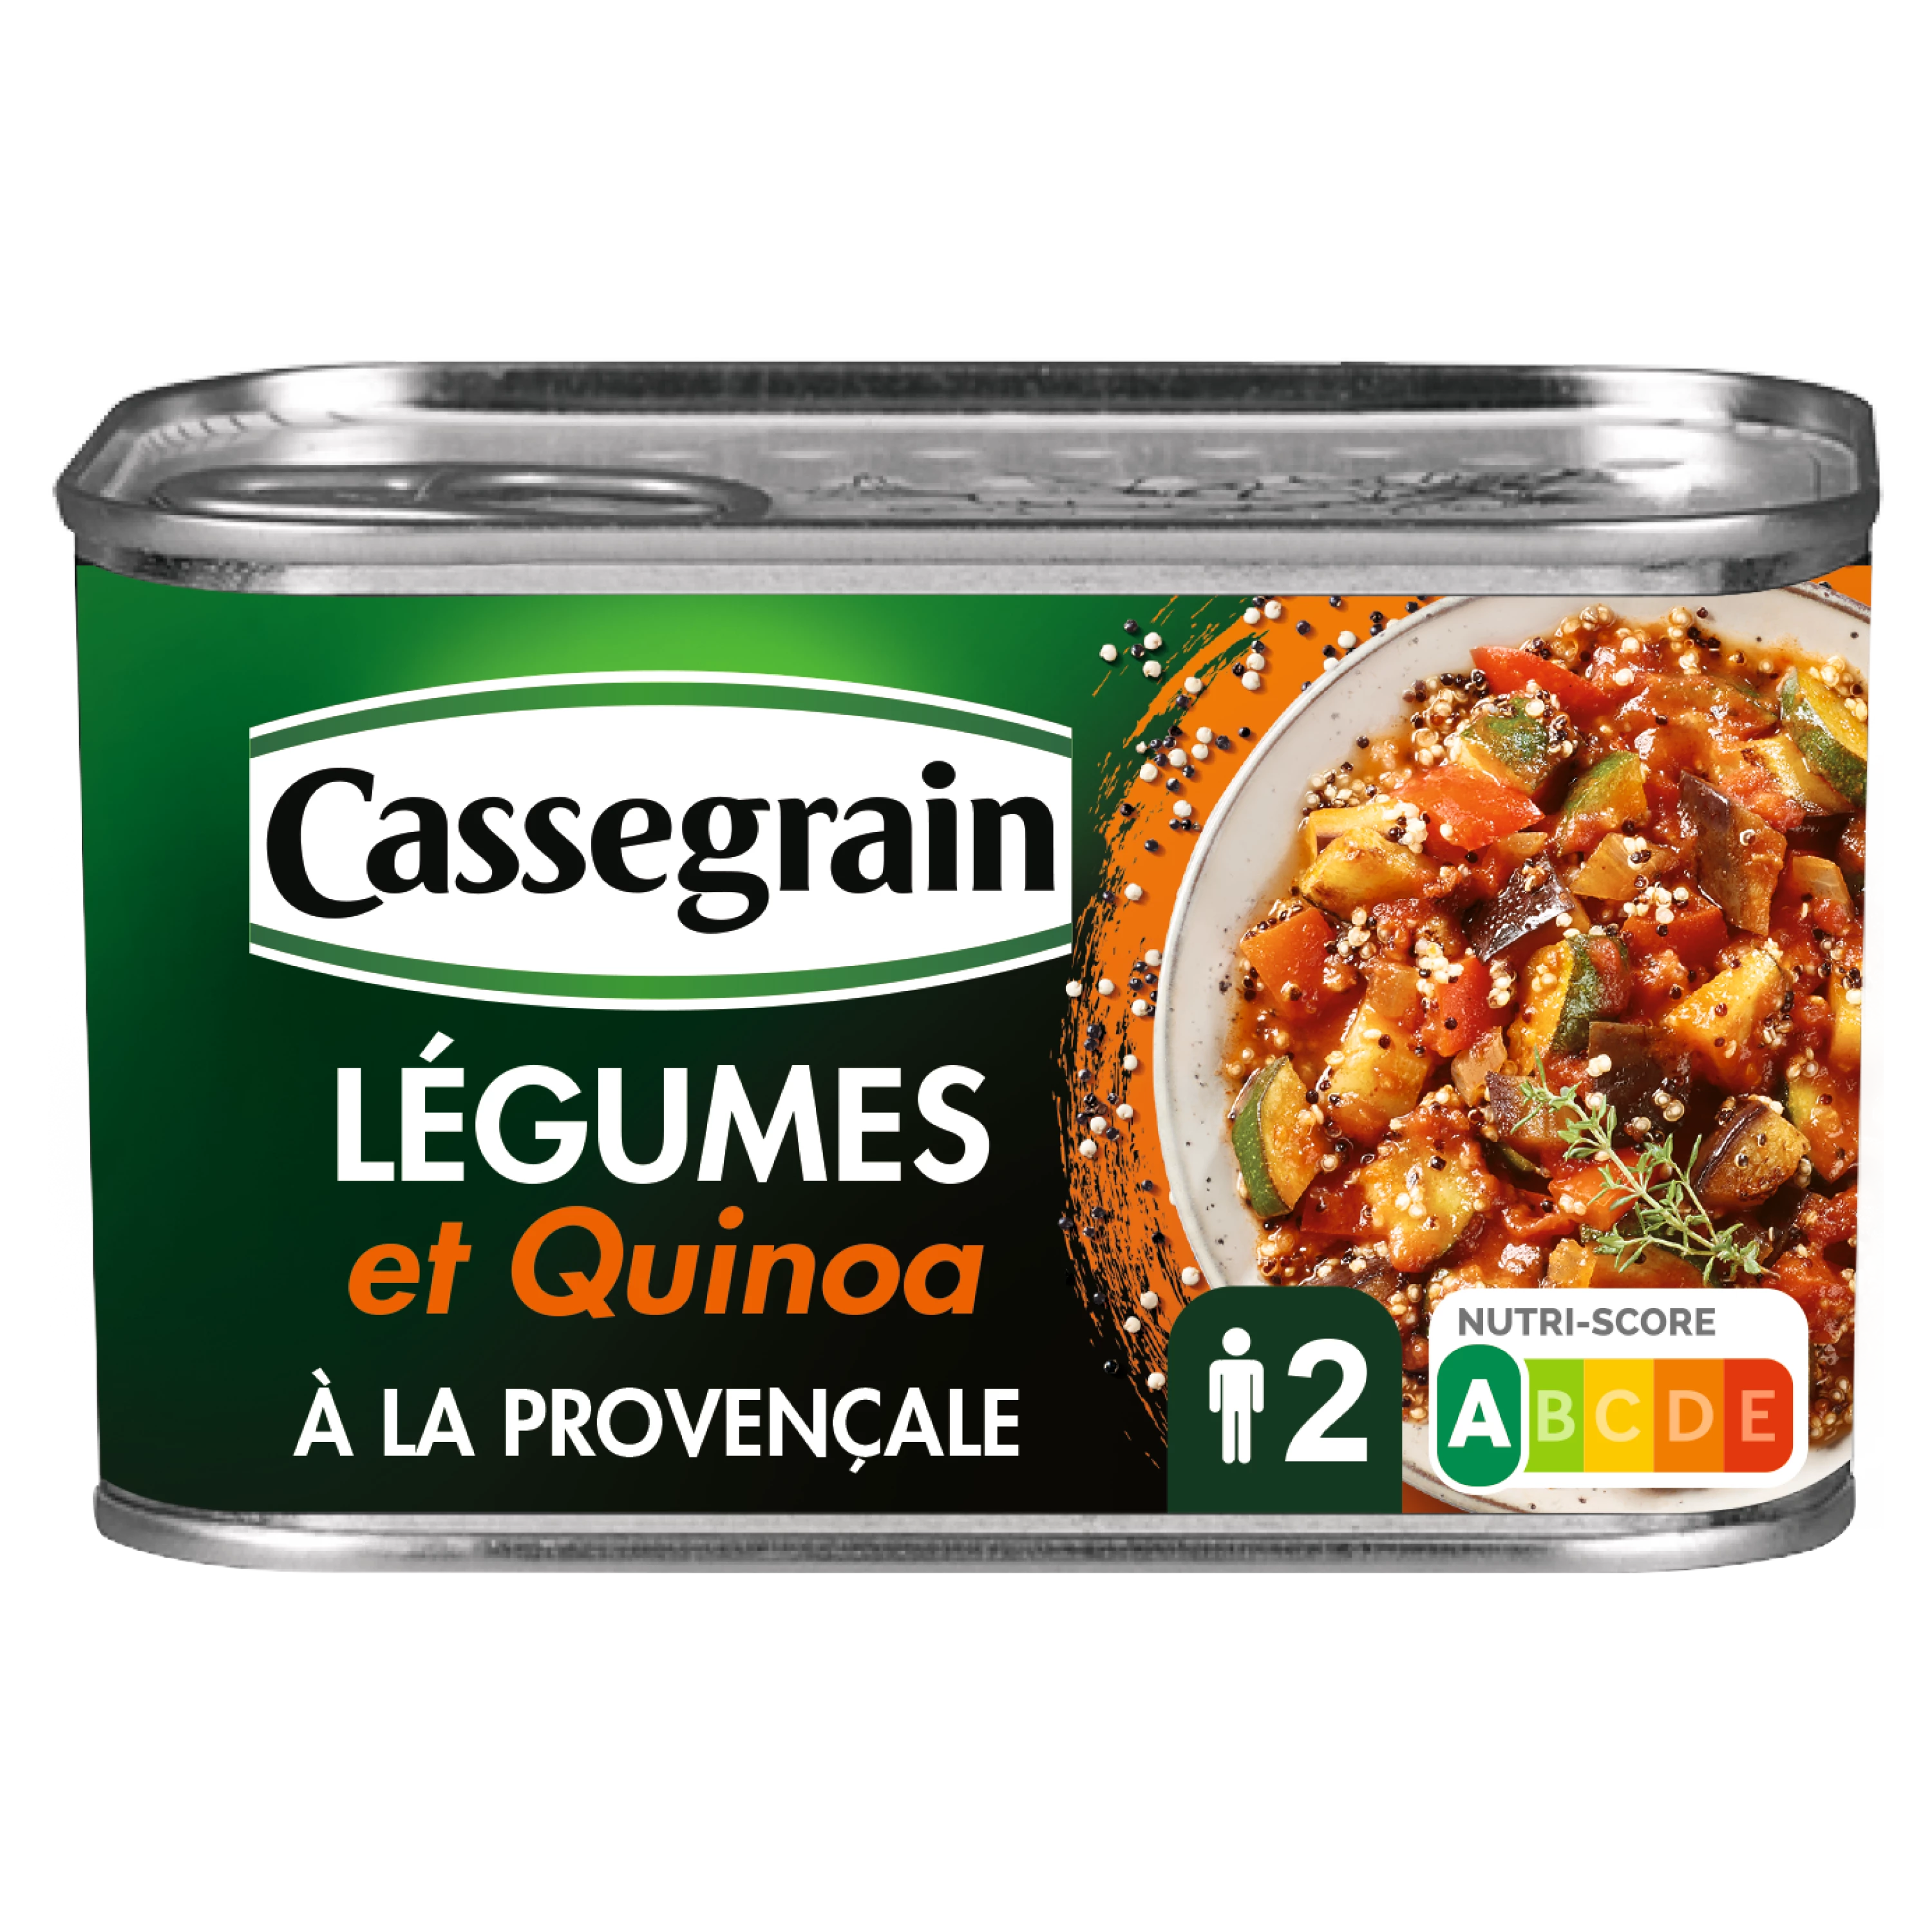 Vegetables and Quinoa Cooked in La Provença; 375g -  CASSEGRAIN